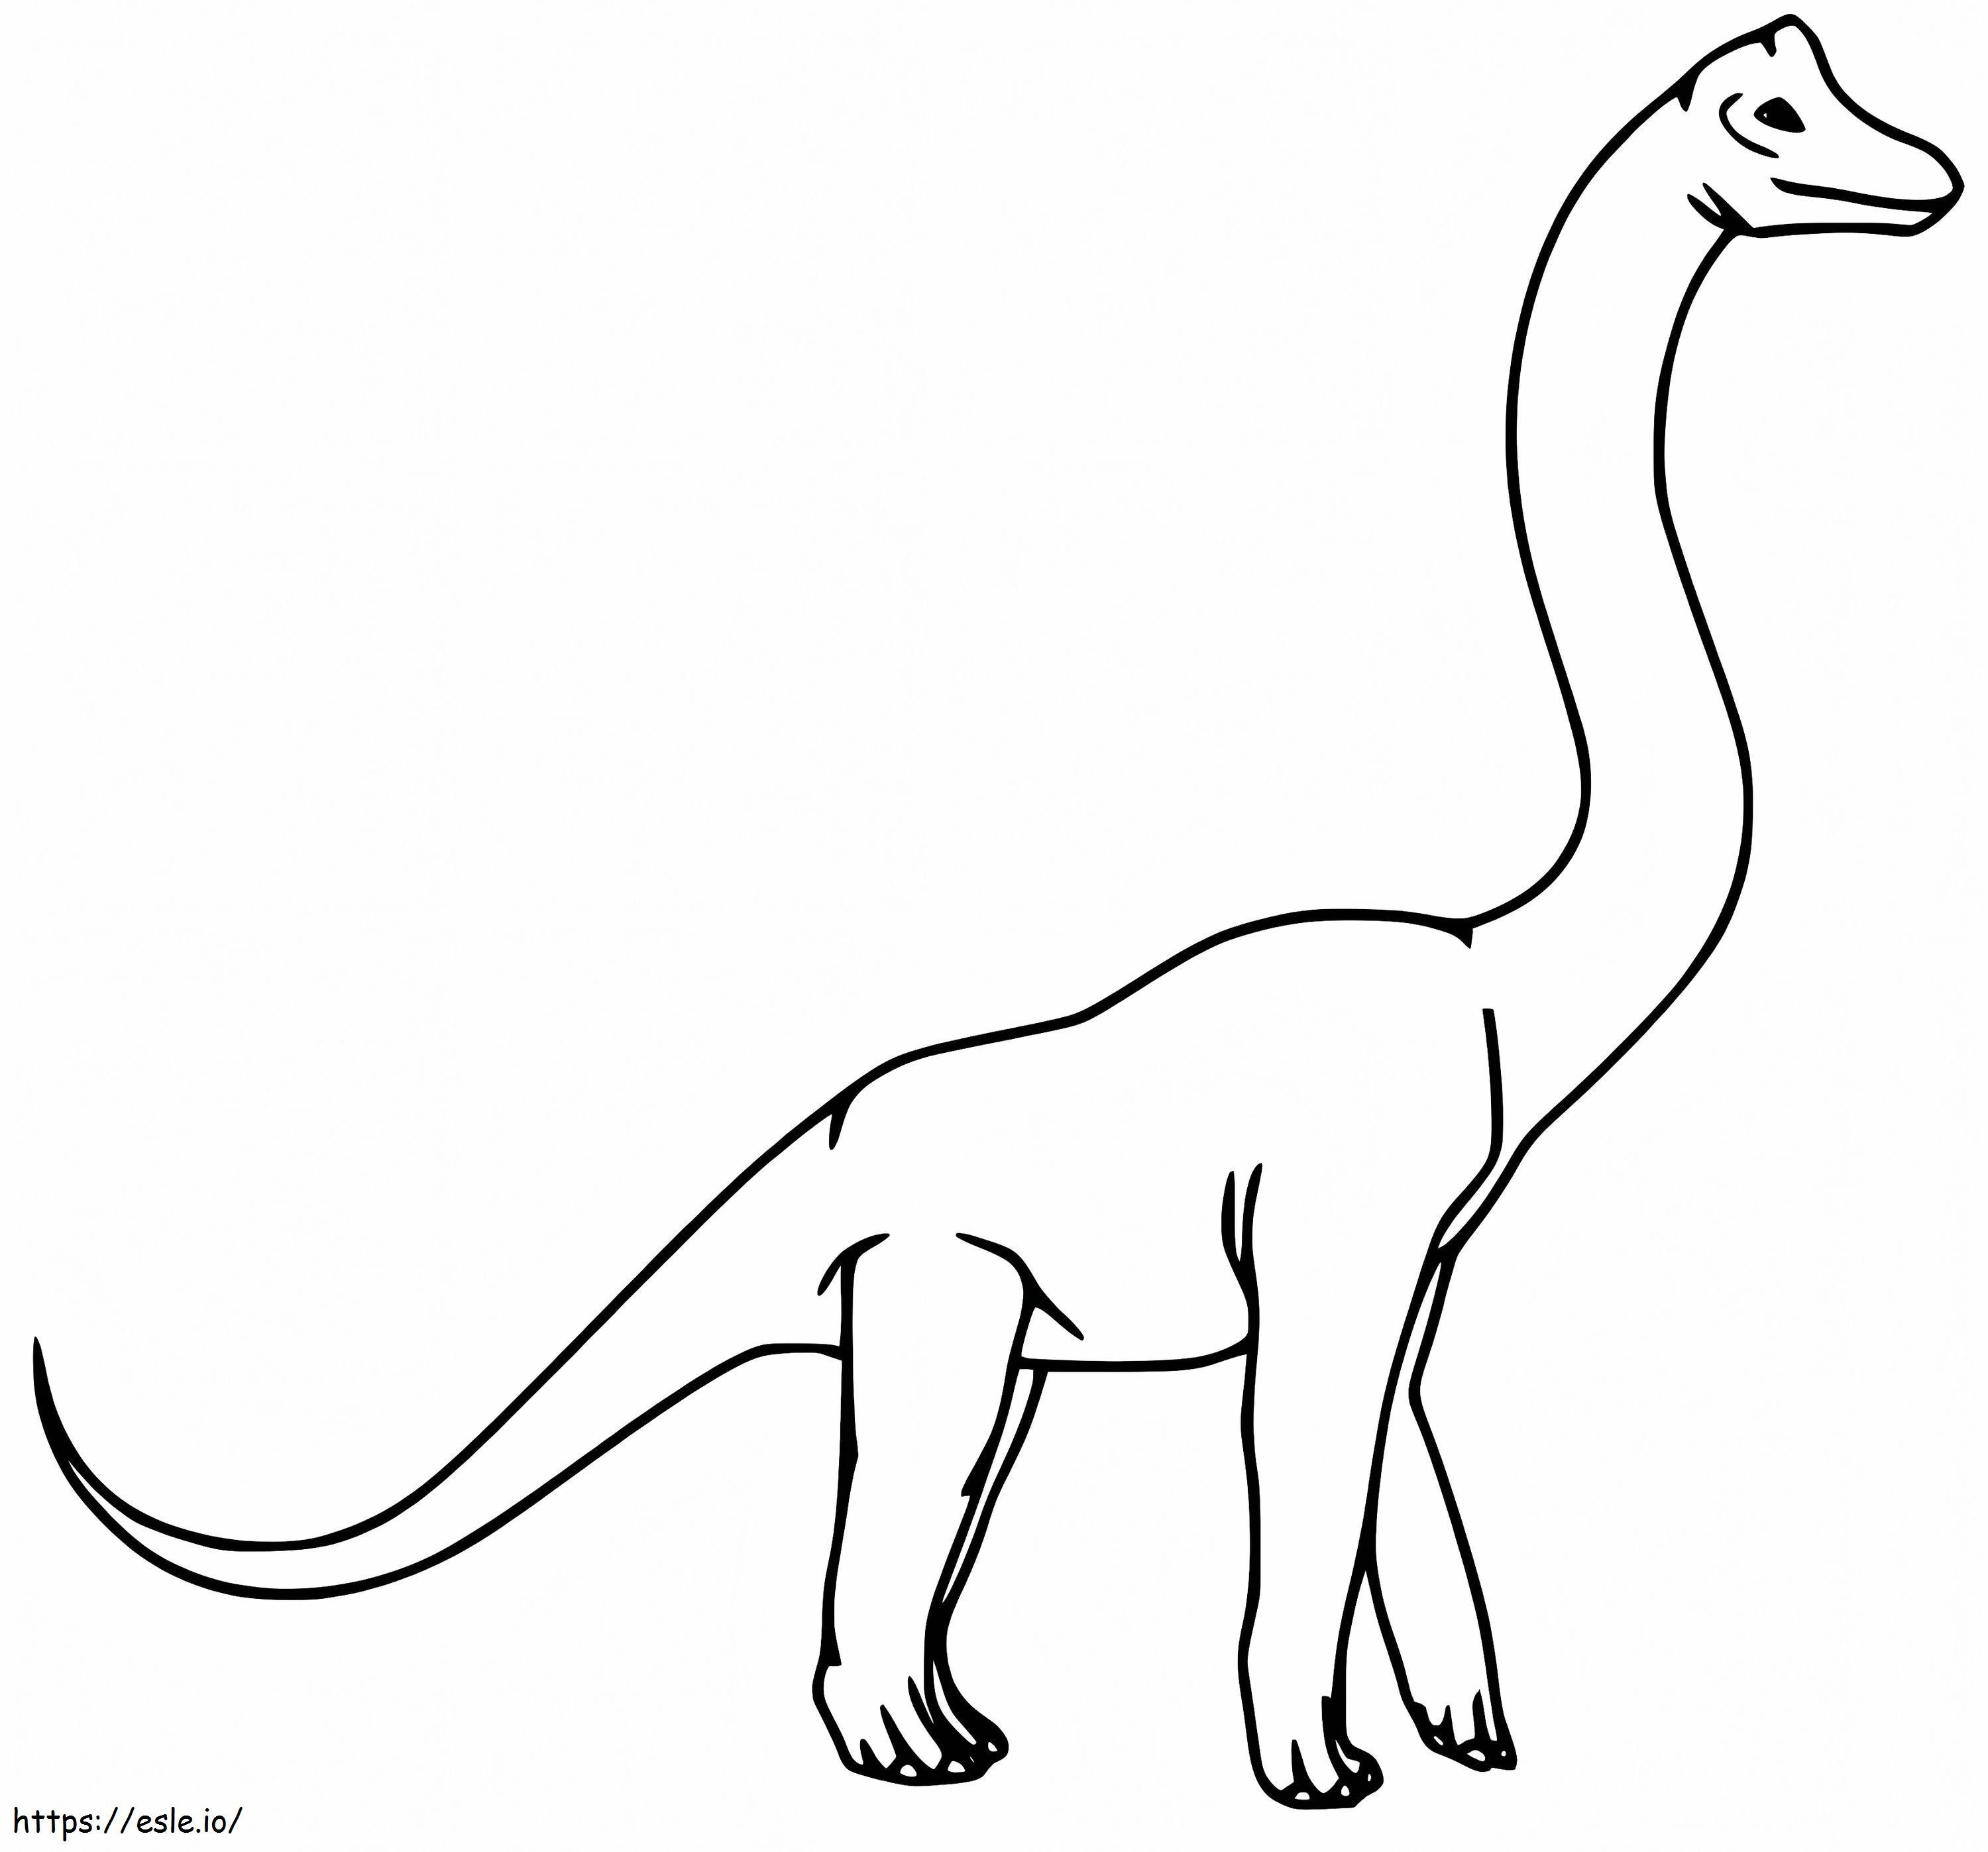 Brachiosaurus 6 boyama